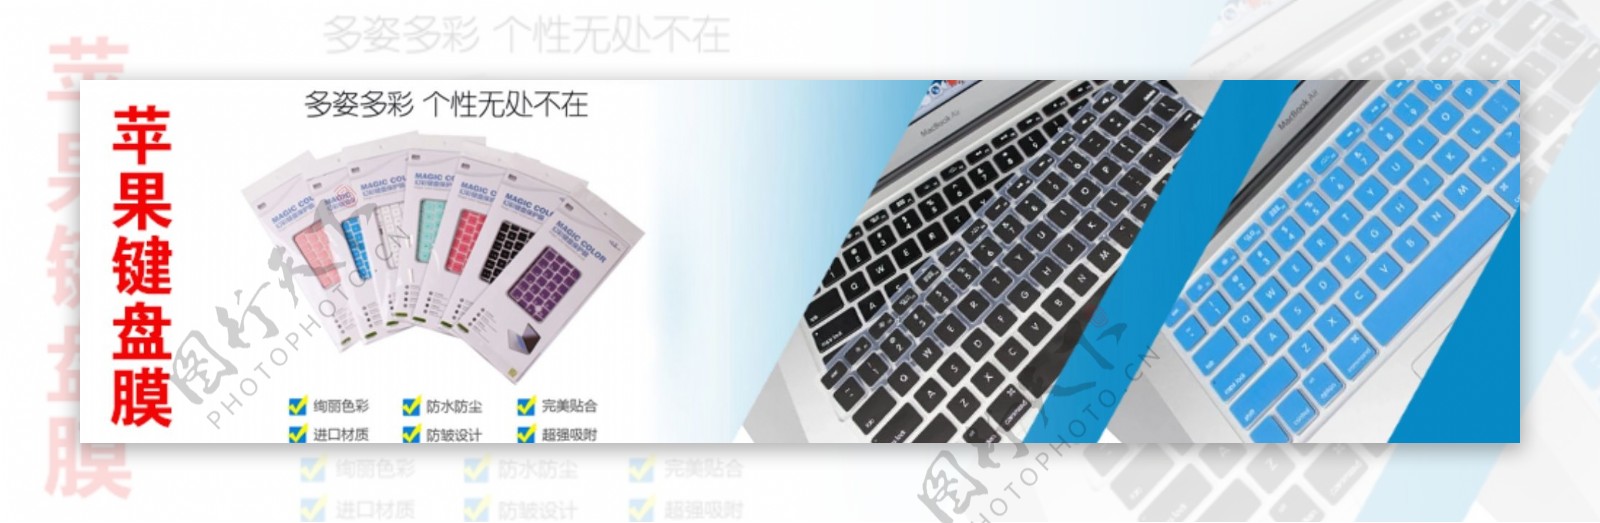 苹果键盘膜海报iPhone键盘膜